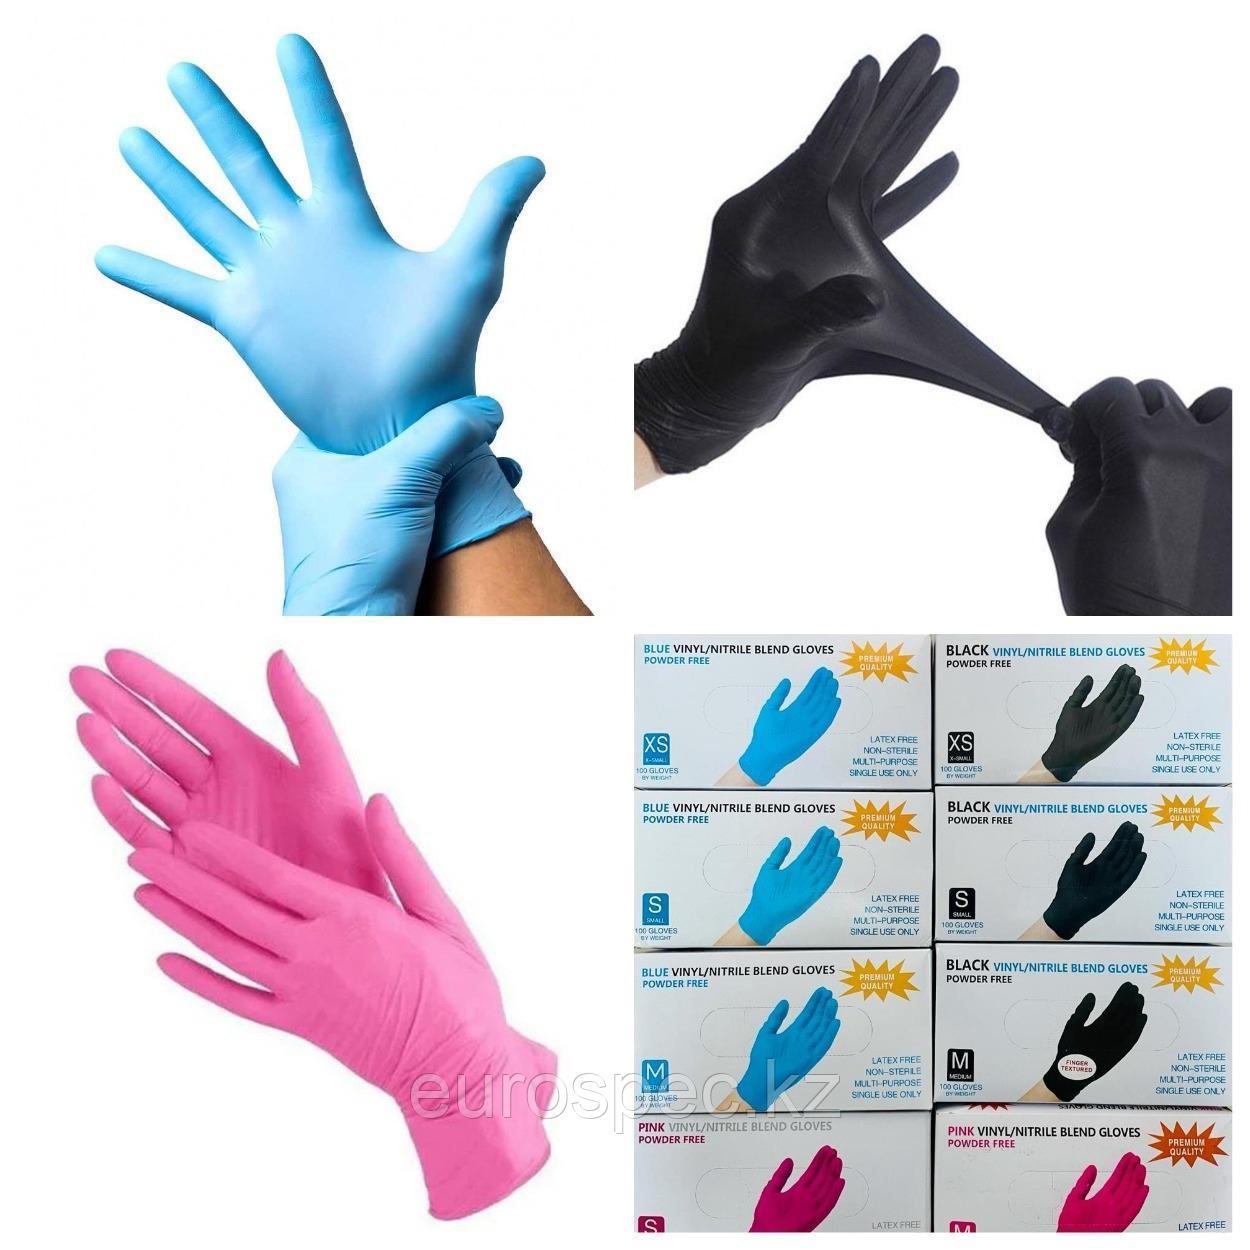 Медицинские перчатки, нитриловые/виниловые Wally Plastic и Unex, отличное качество!, фото 1